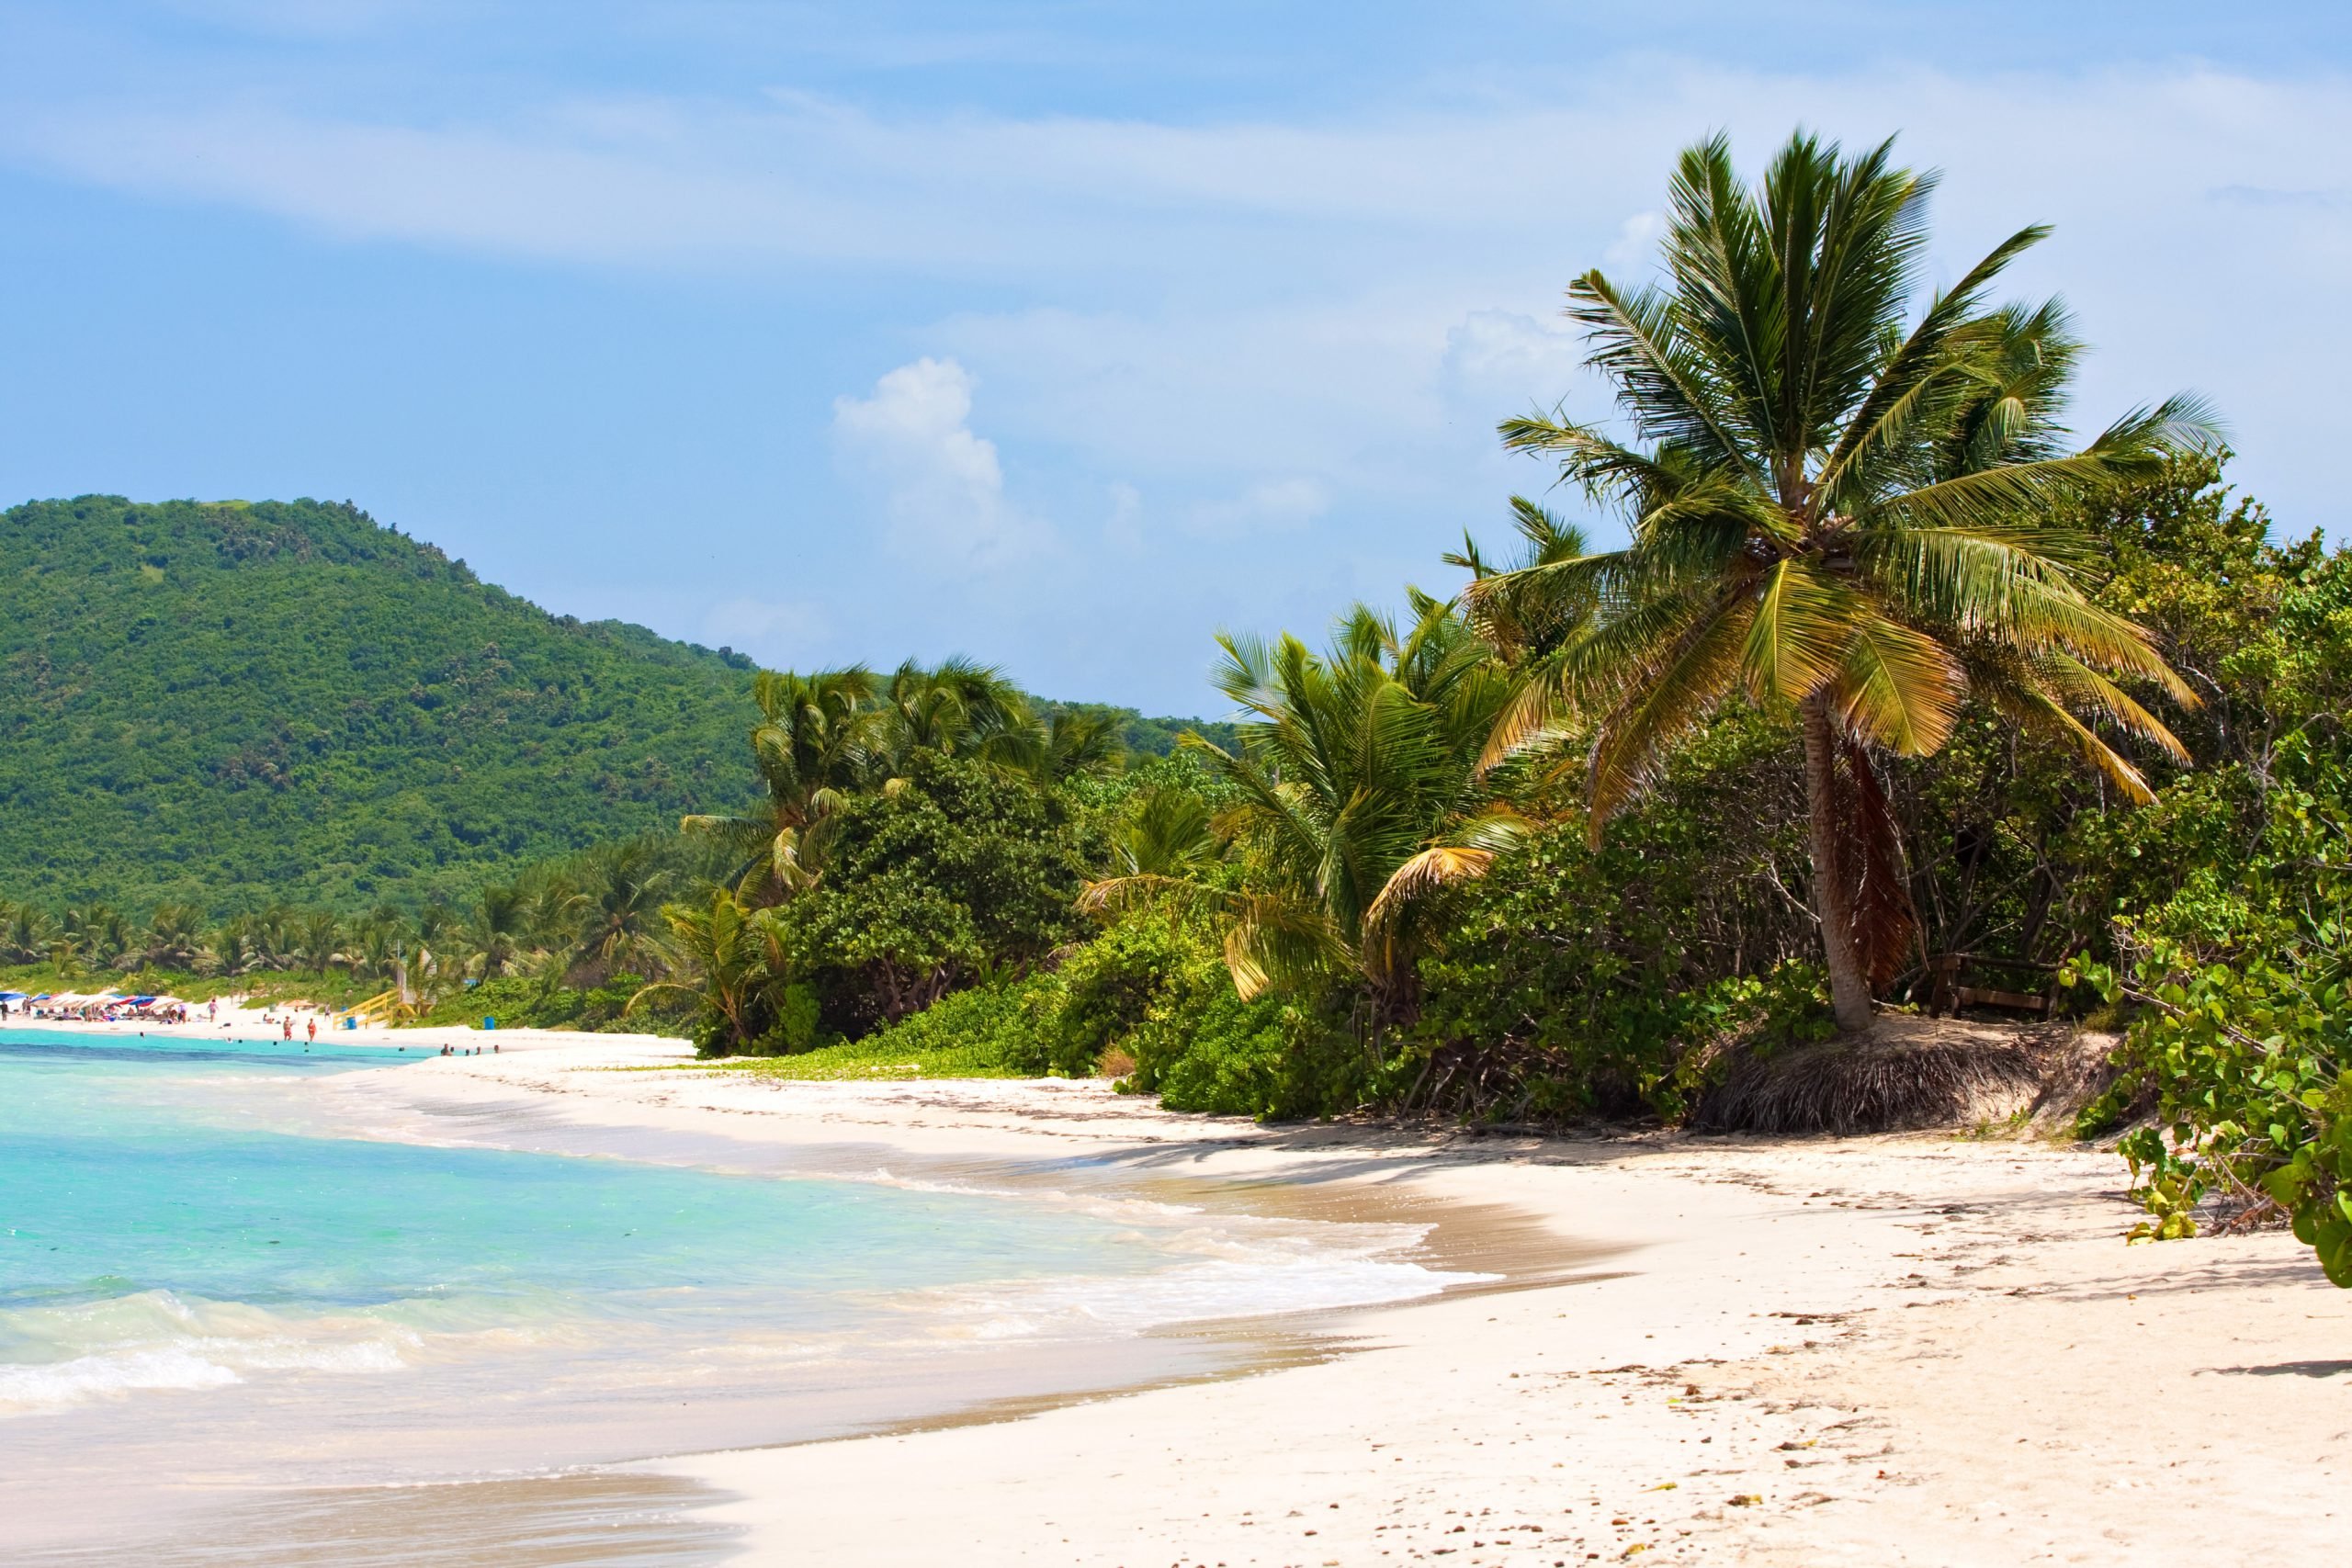 A view of the Culebra Island Flamenco Beach